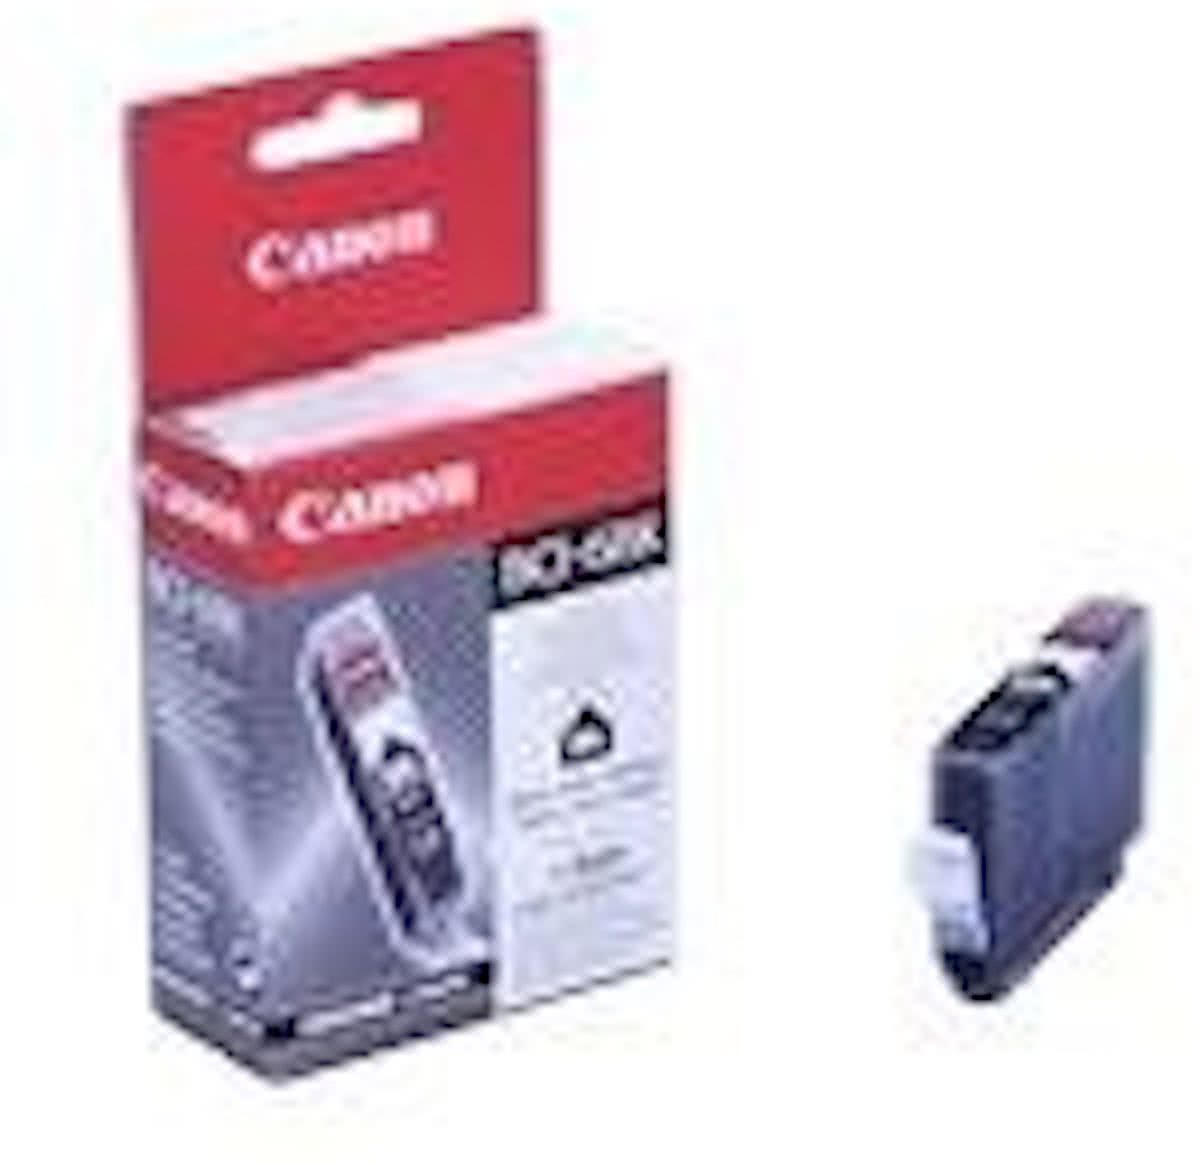 Canon BCI-6BK - Inktcartridge / Zwart